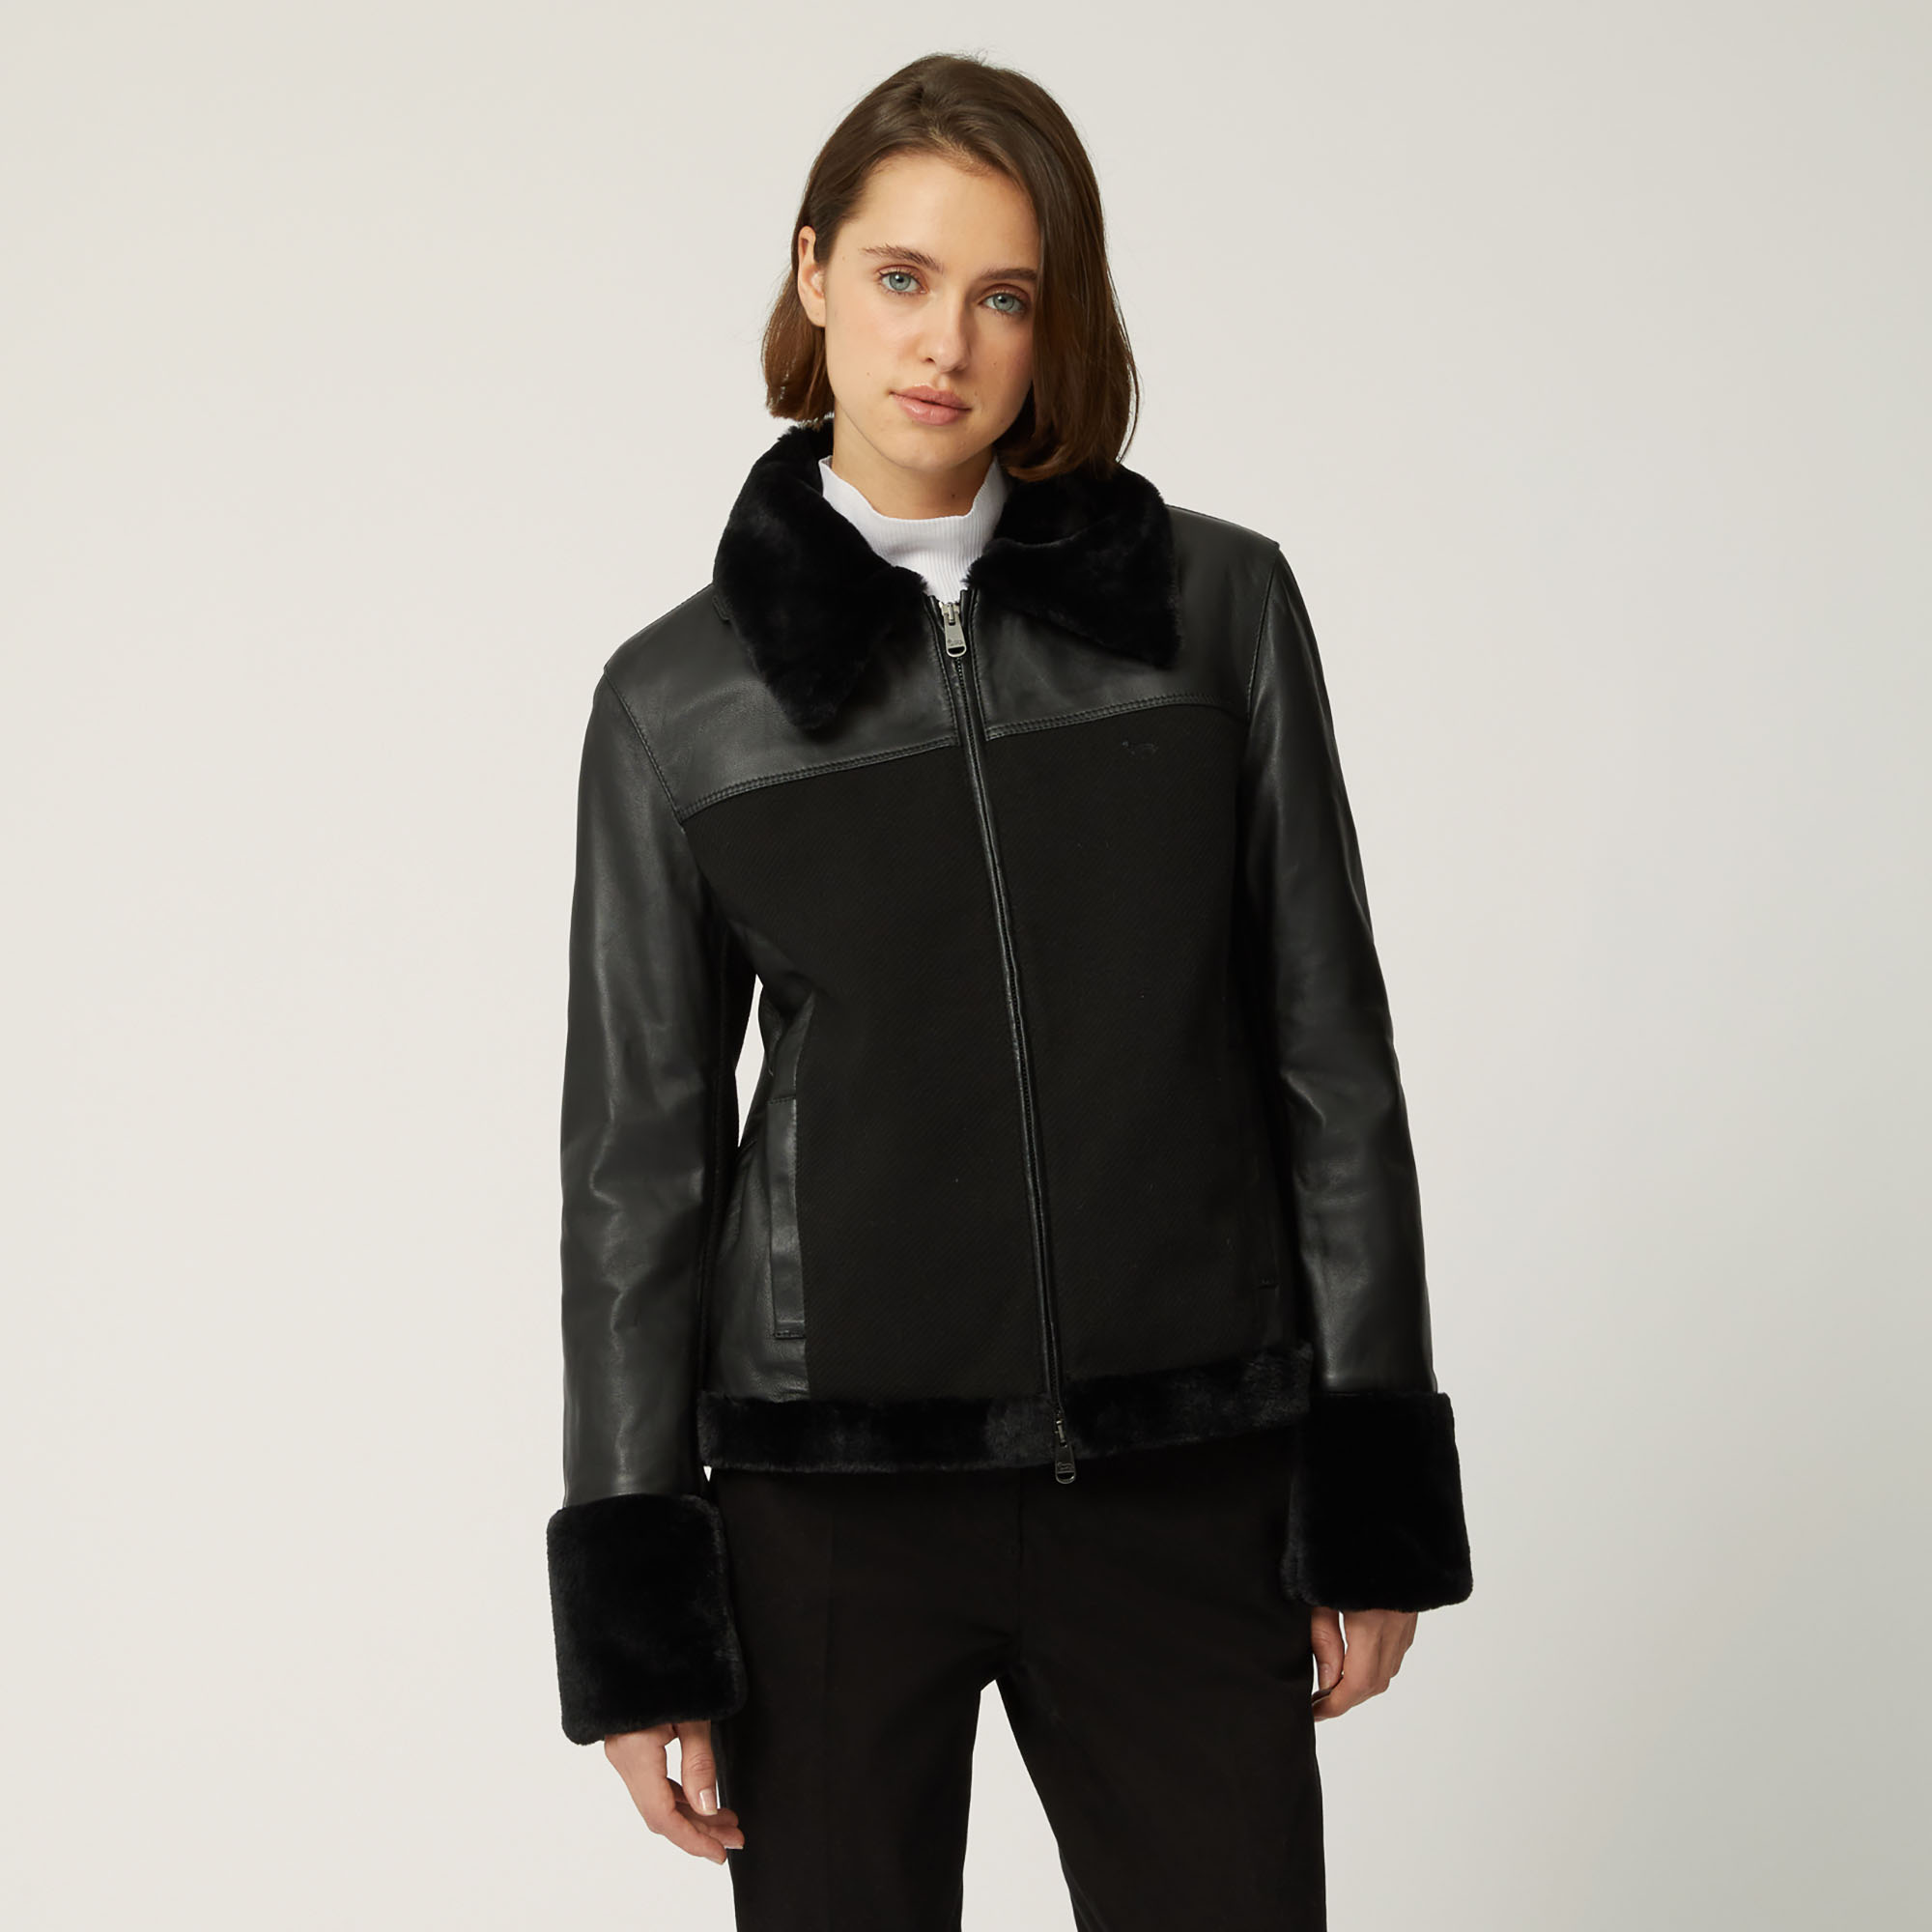 Leather Jacket With Fur Details, Black, large